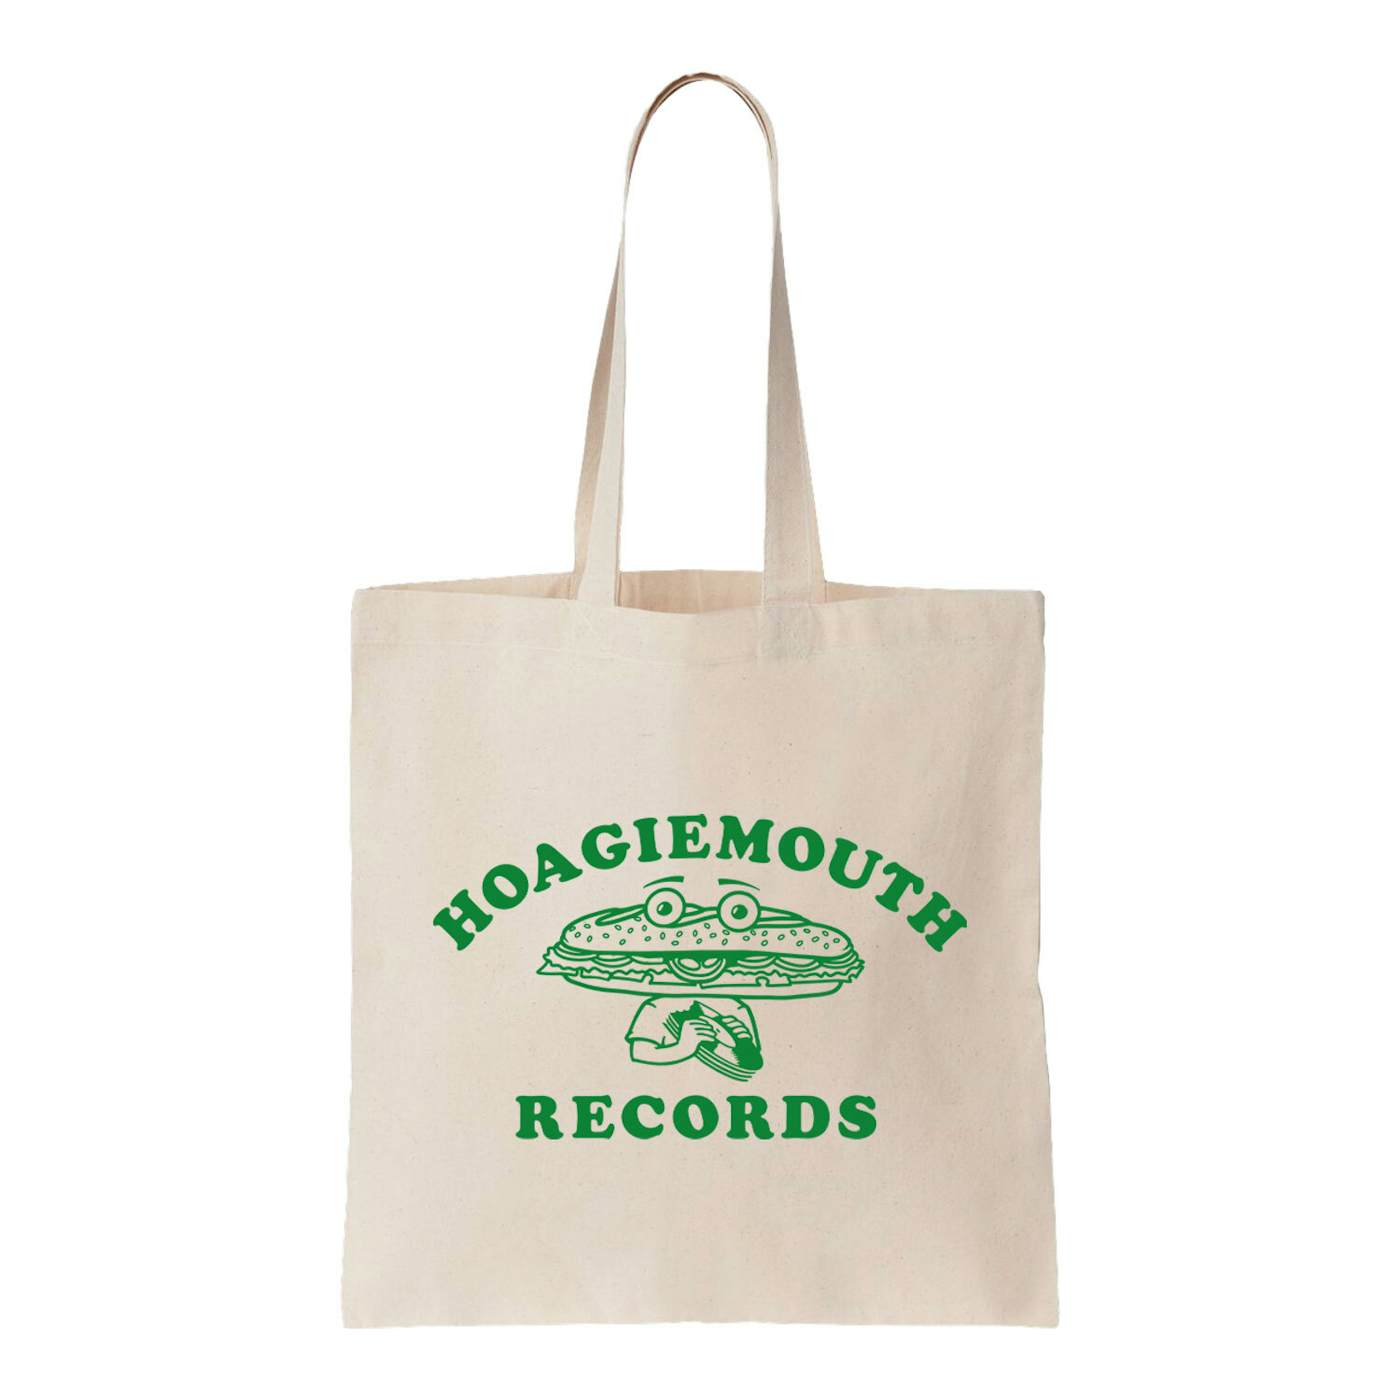 Amos Lee Hoagiemouth Records Natural Tote